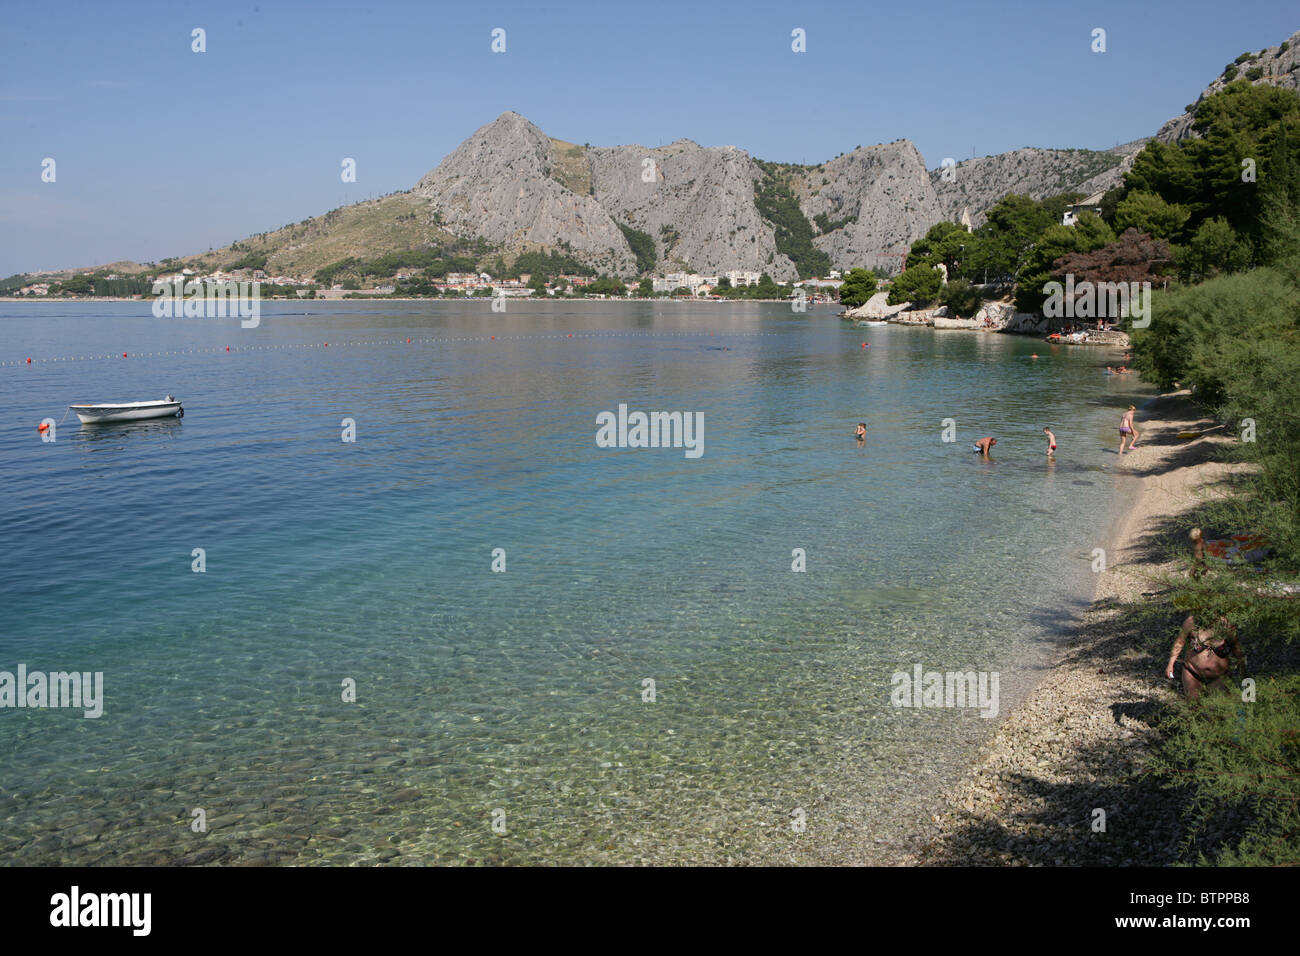 Les gens jouent sur la plage, dans les eaux claires près de la vieille ville de Dubrovnik, Croatie Banque D'Images